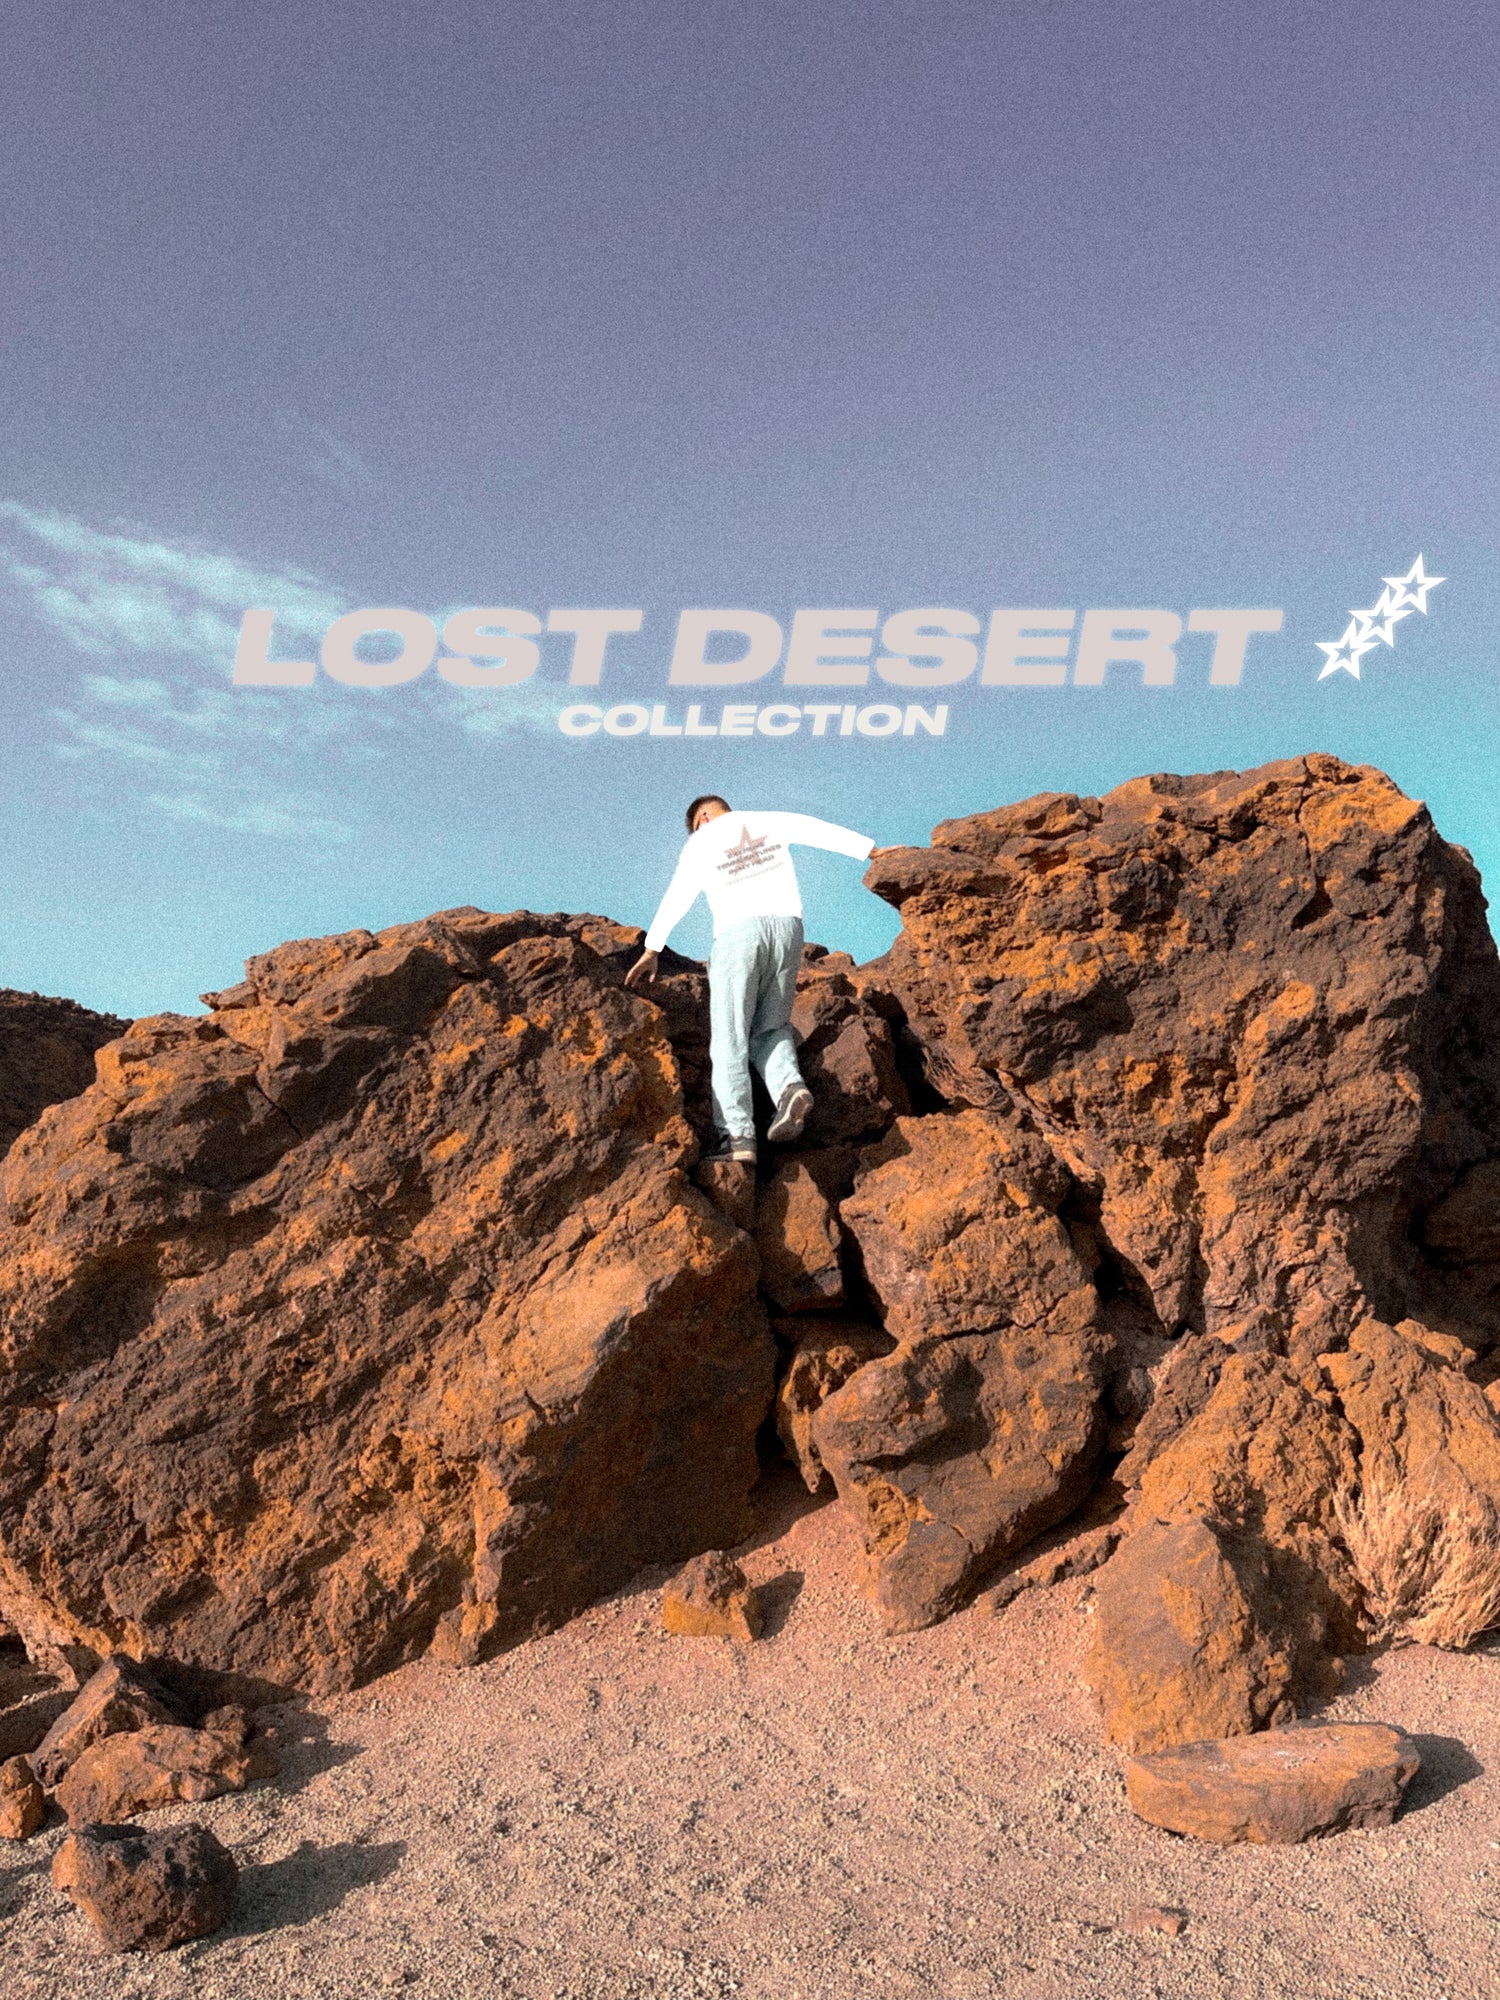 LOST DESERT